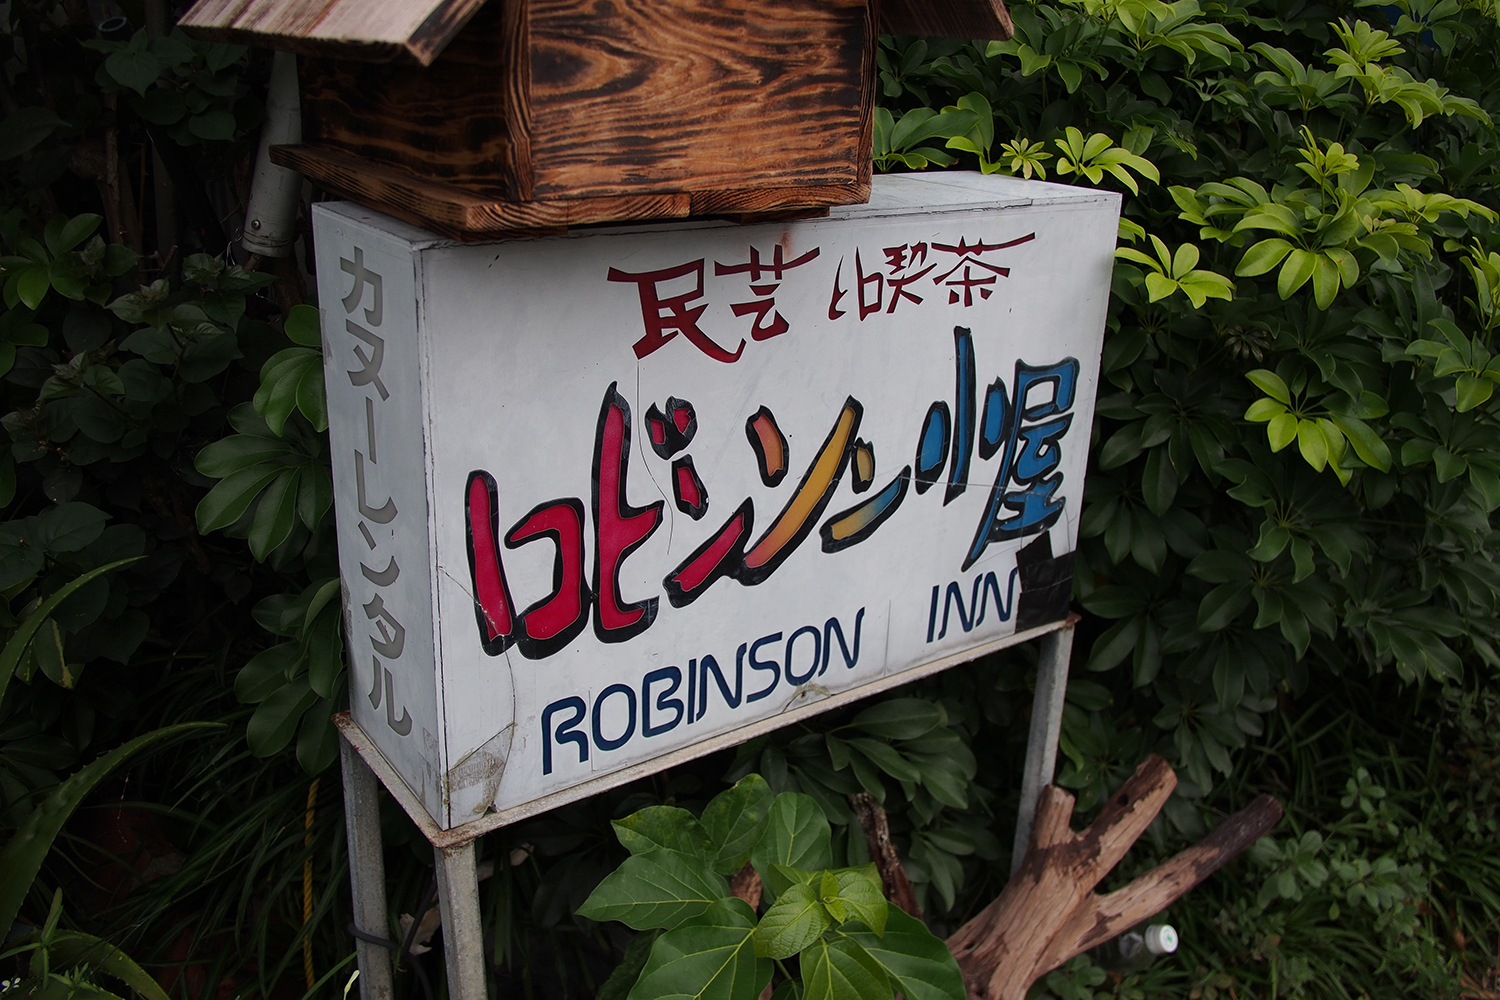 西表島のロビンソン小屋を訪れた話はどうでしょう 沖縄b級ポータル Deeokinawa でぃーおきなわ